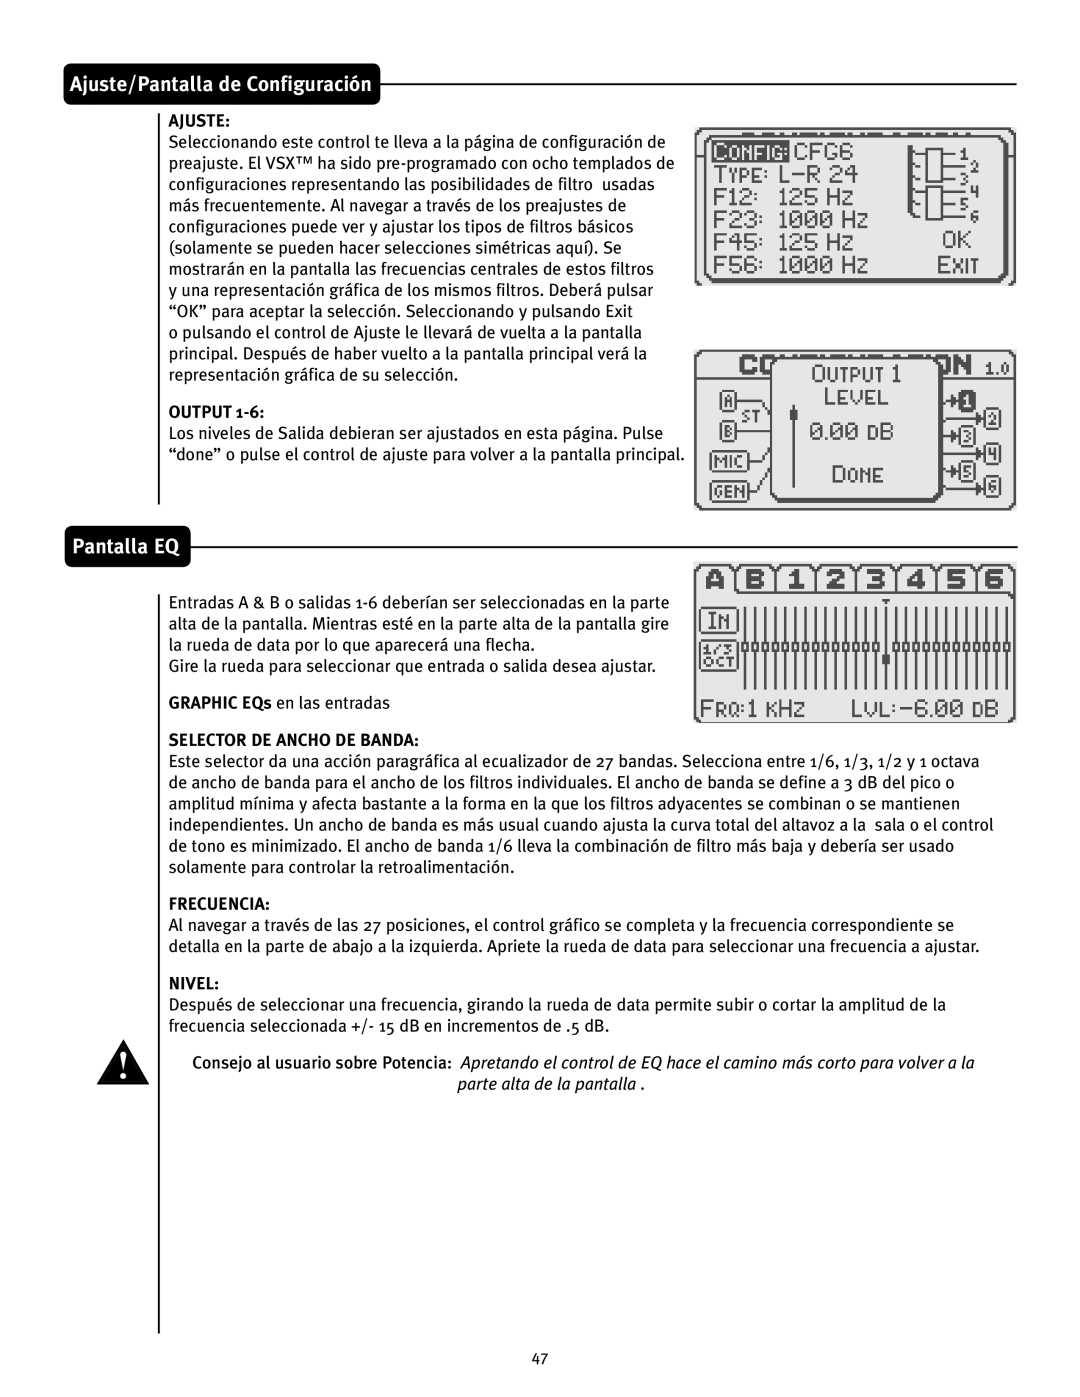 Peavey VSX 26 manual Pantalla EQ, Ajuste/Pantalla de Configuración, Output, Selector De Ancho De Banda, Frecuencia, Nivel 